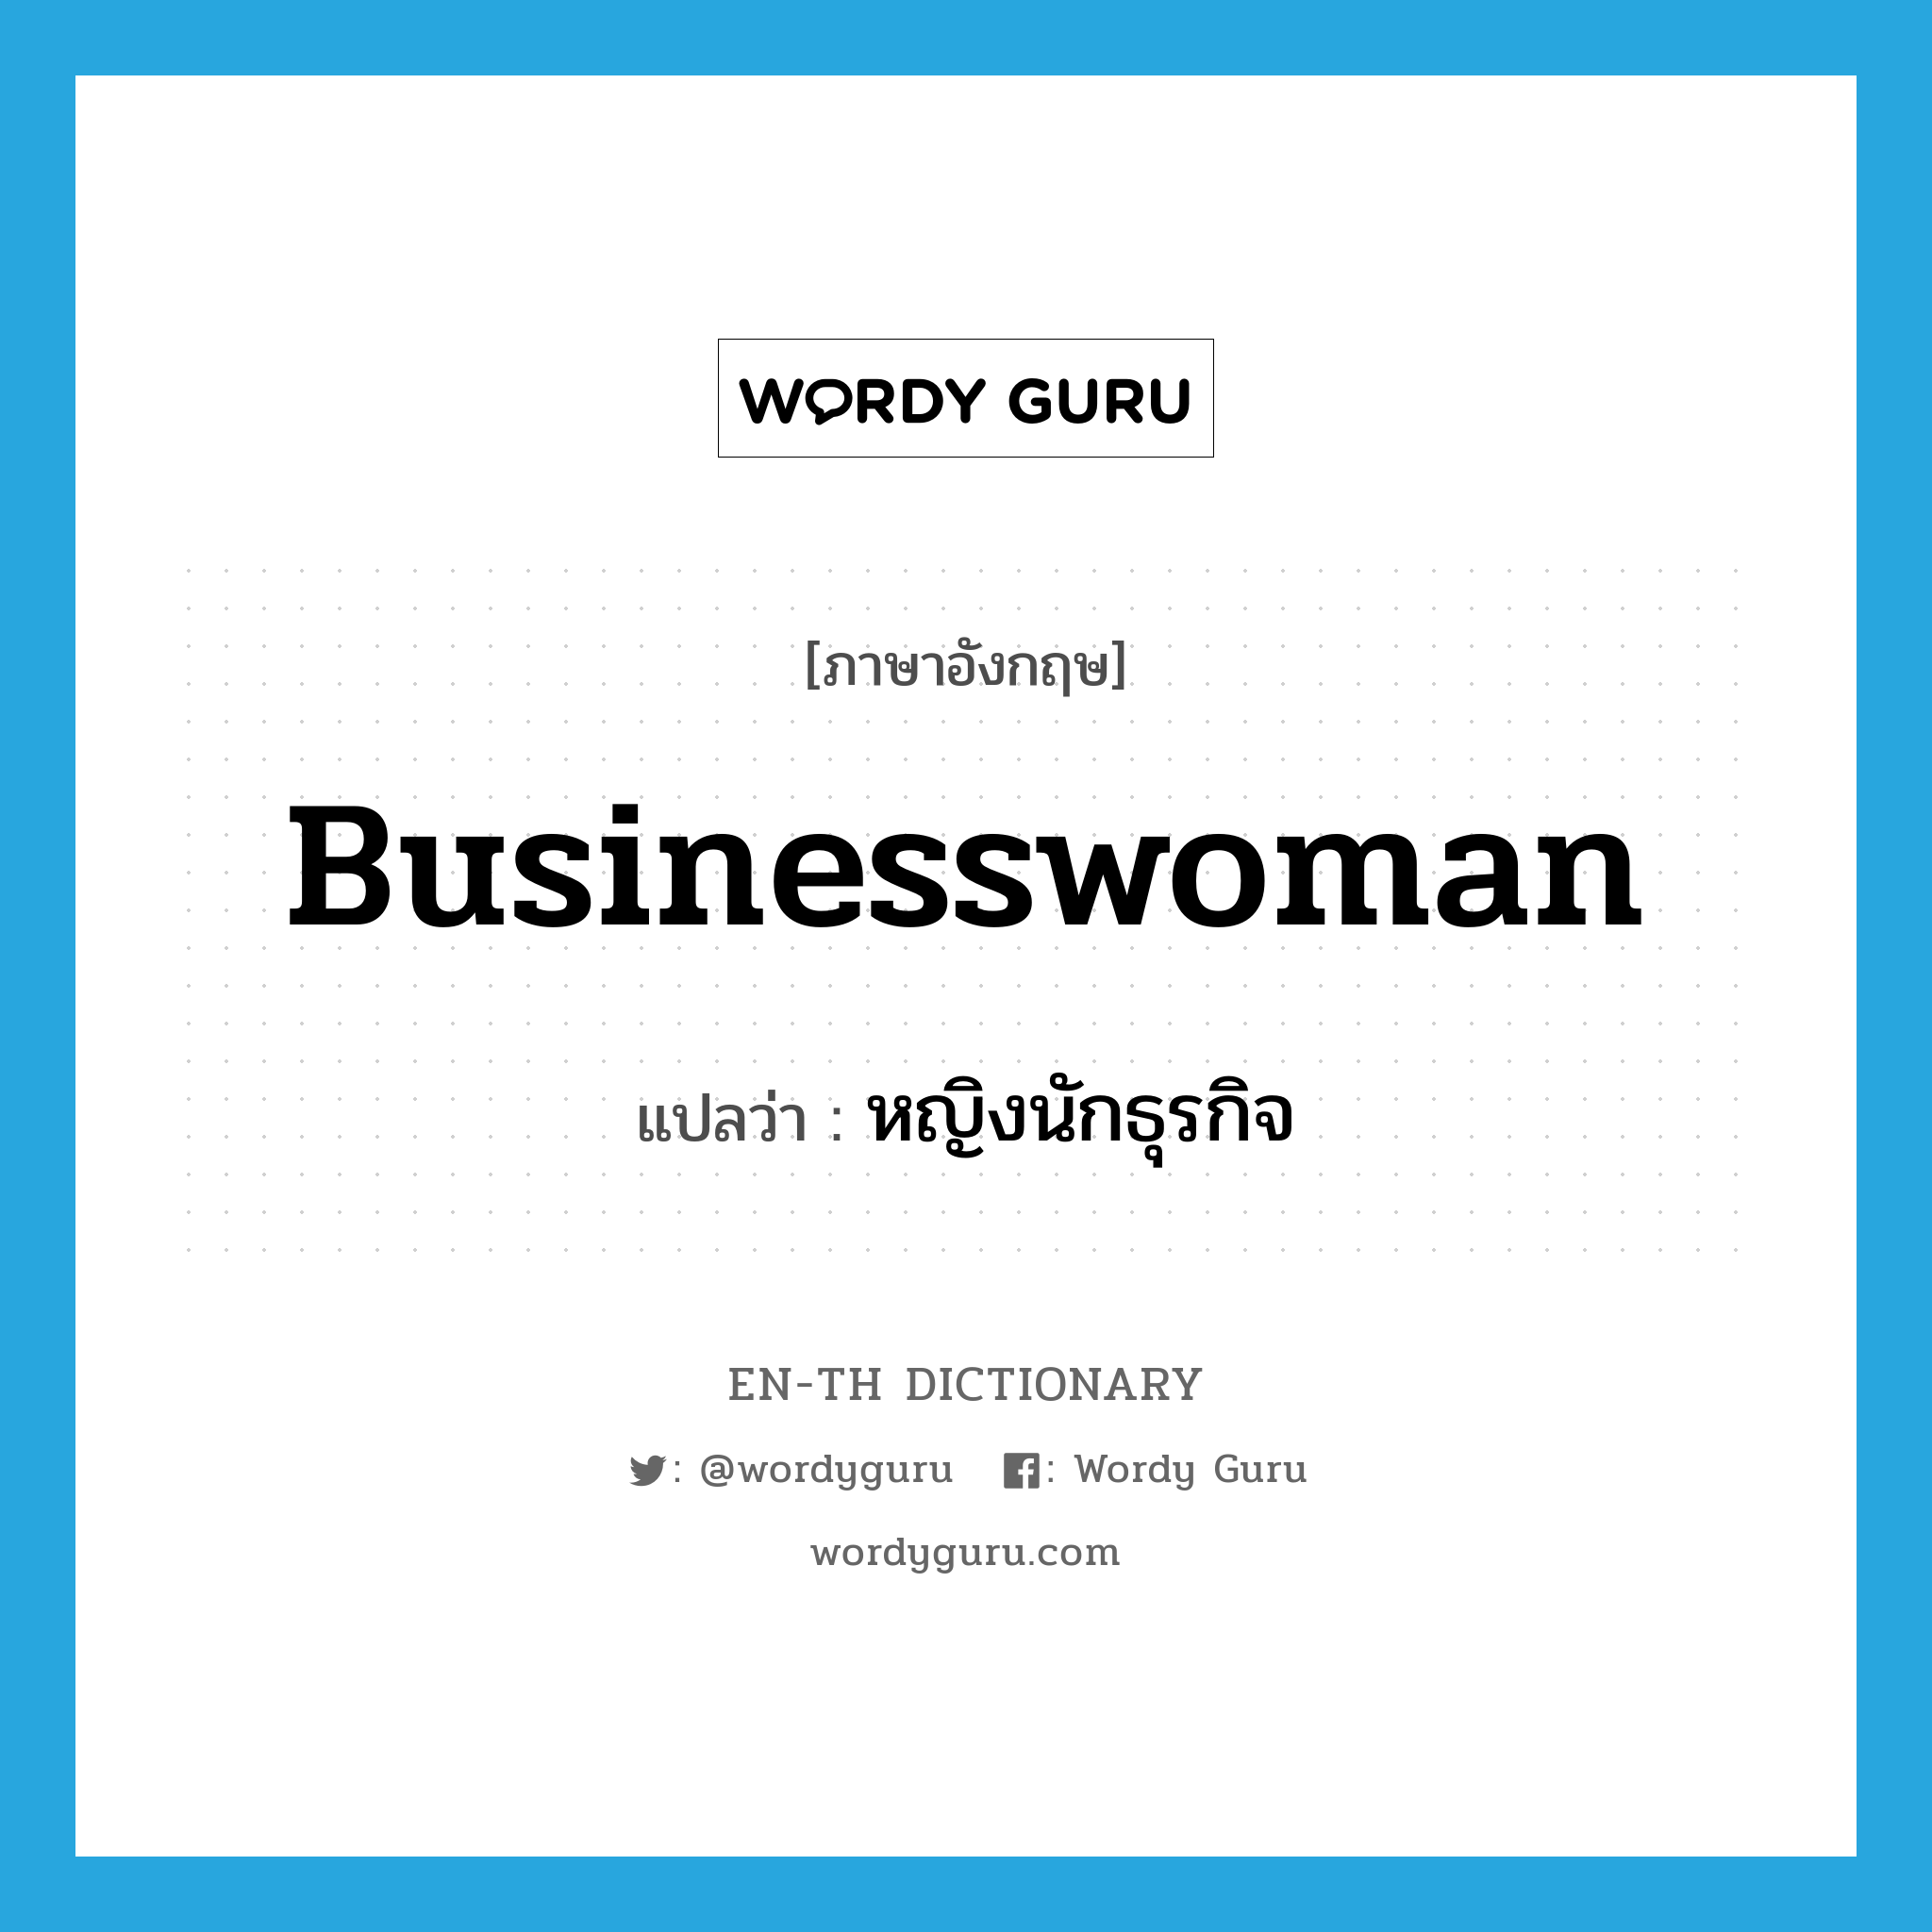 หญิงนักธุรกิจ ภาษาอังกฤษ?, คำศัพท์ภาษาอังกฤษ หญิงนักธุรกิจ แปลว่า businesswoman ประเภท N หมวด N